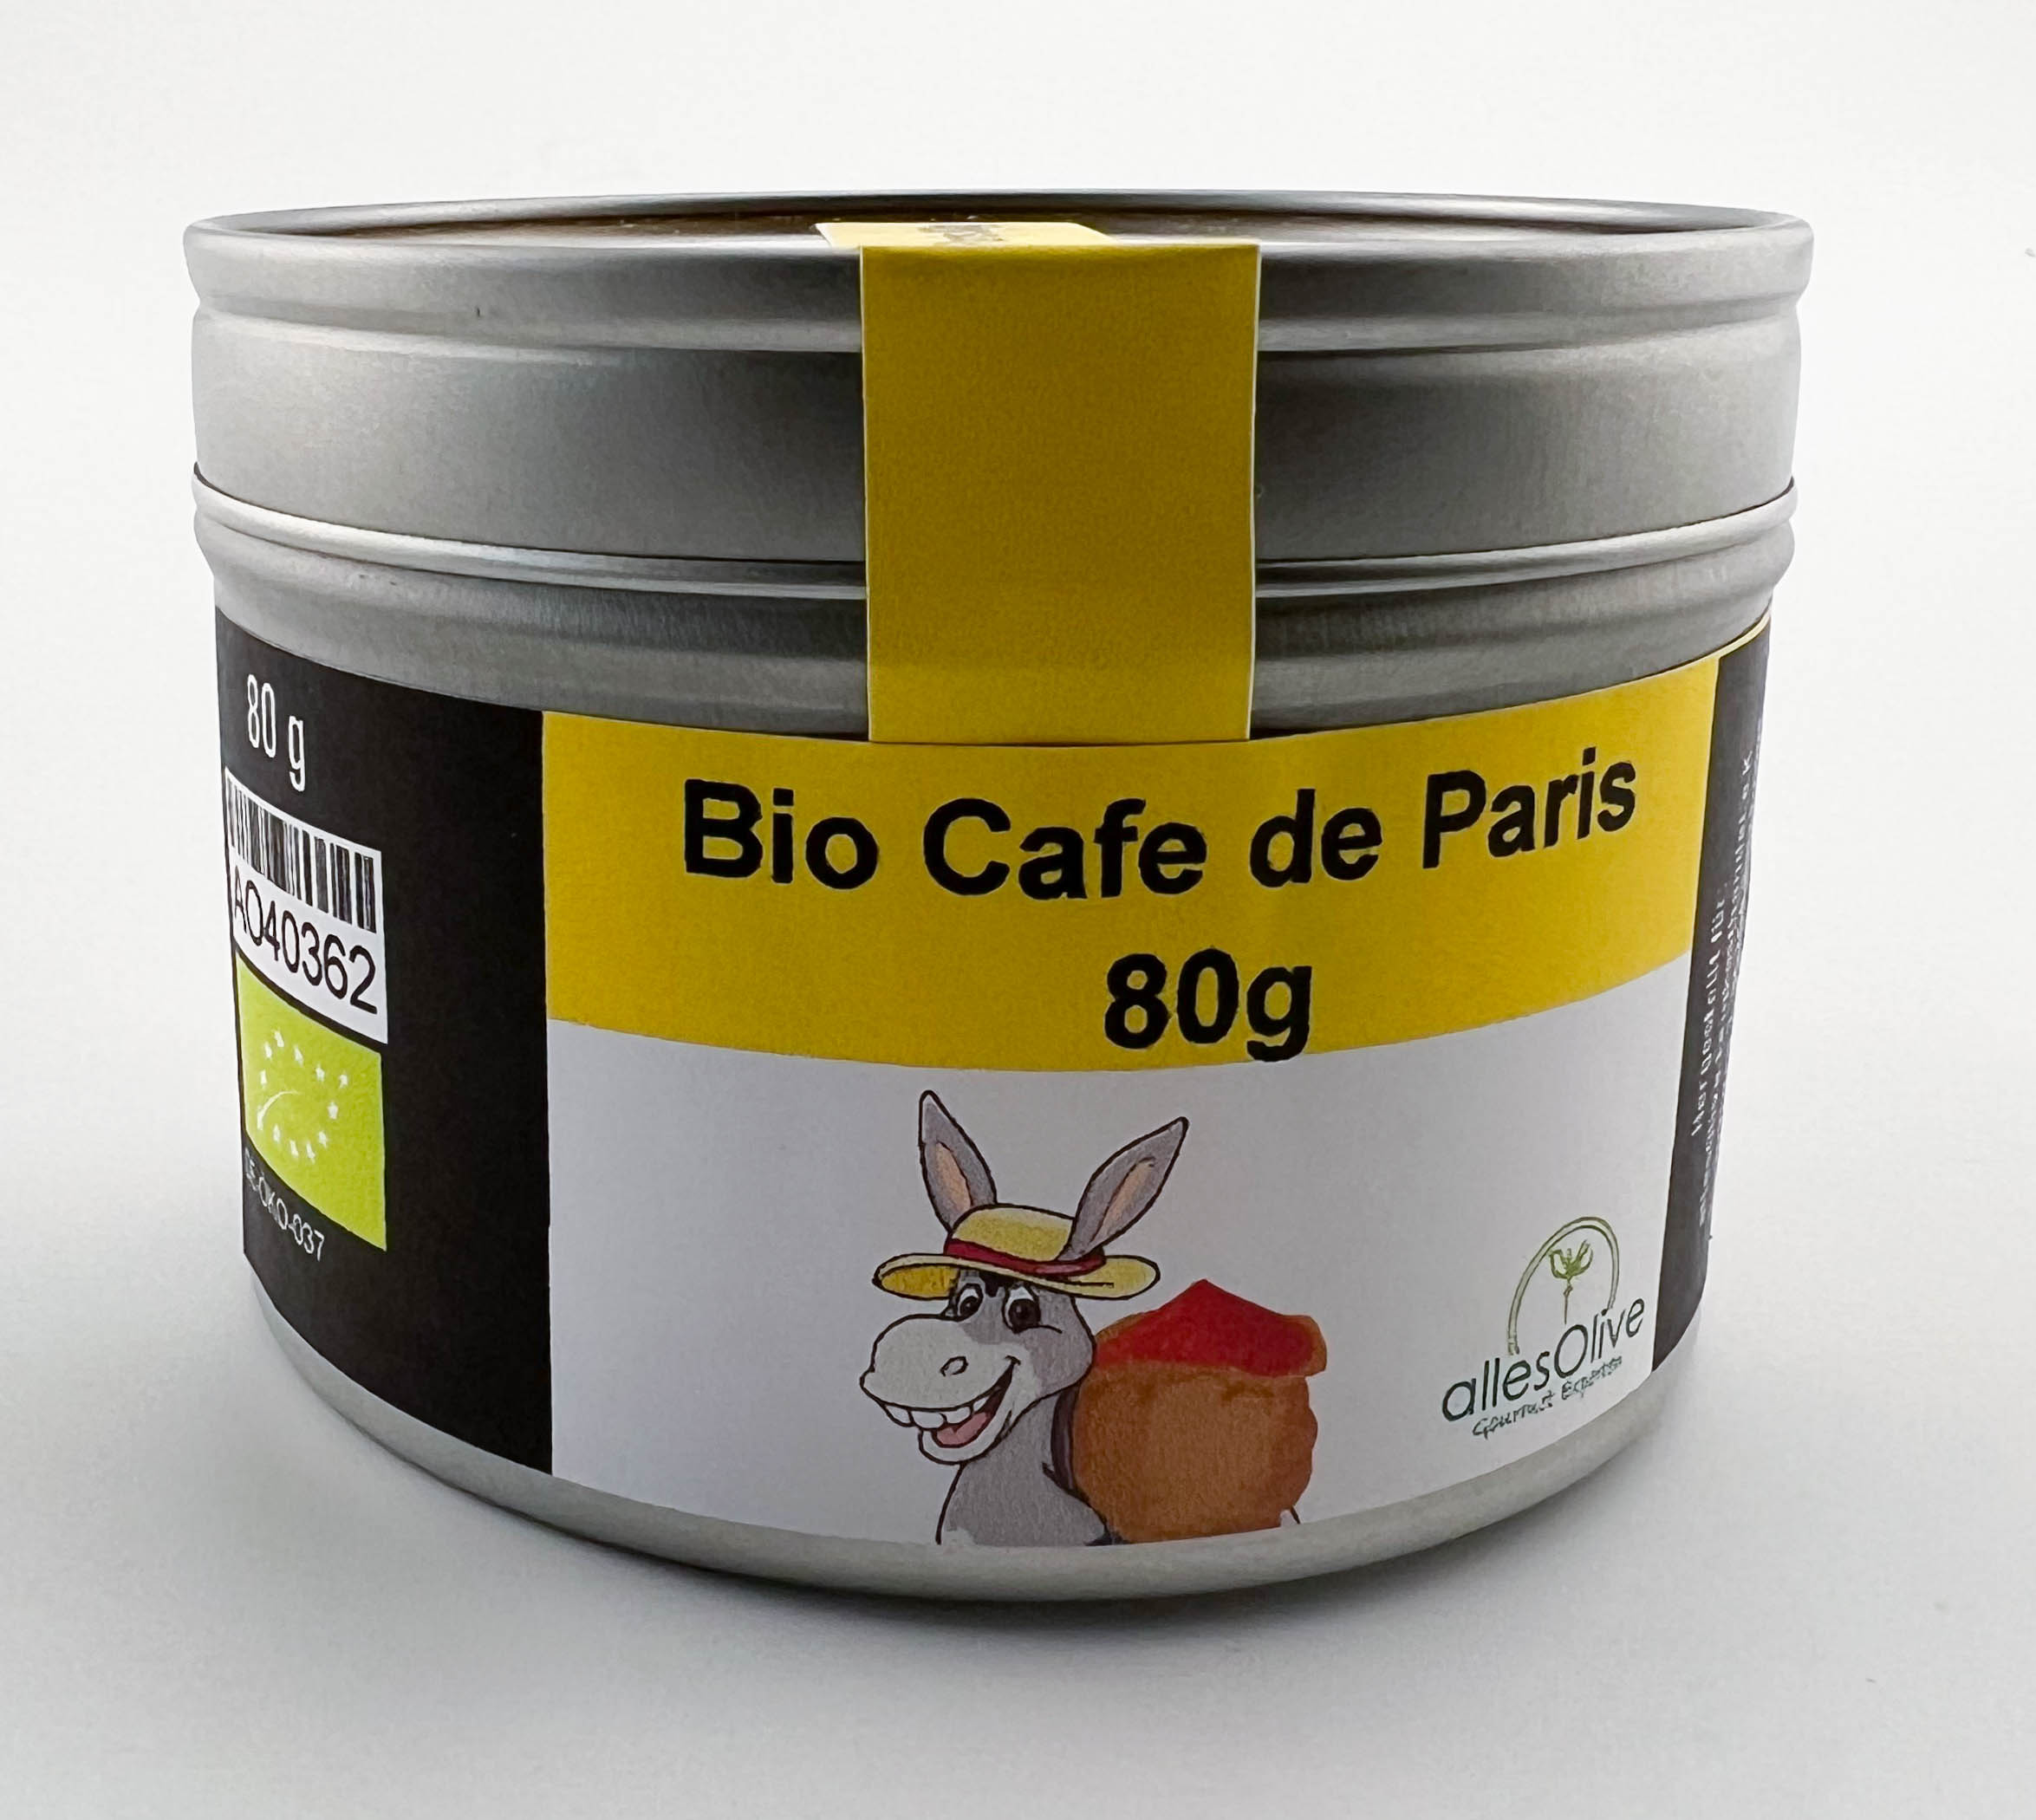 Bio Cafe de Paris 80g